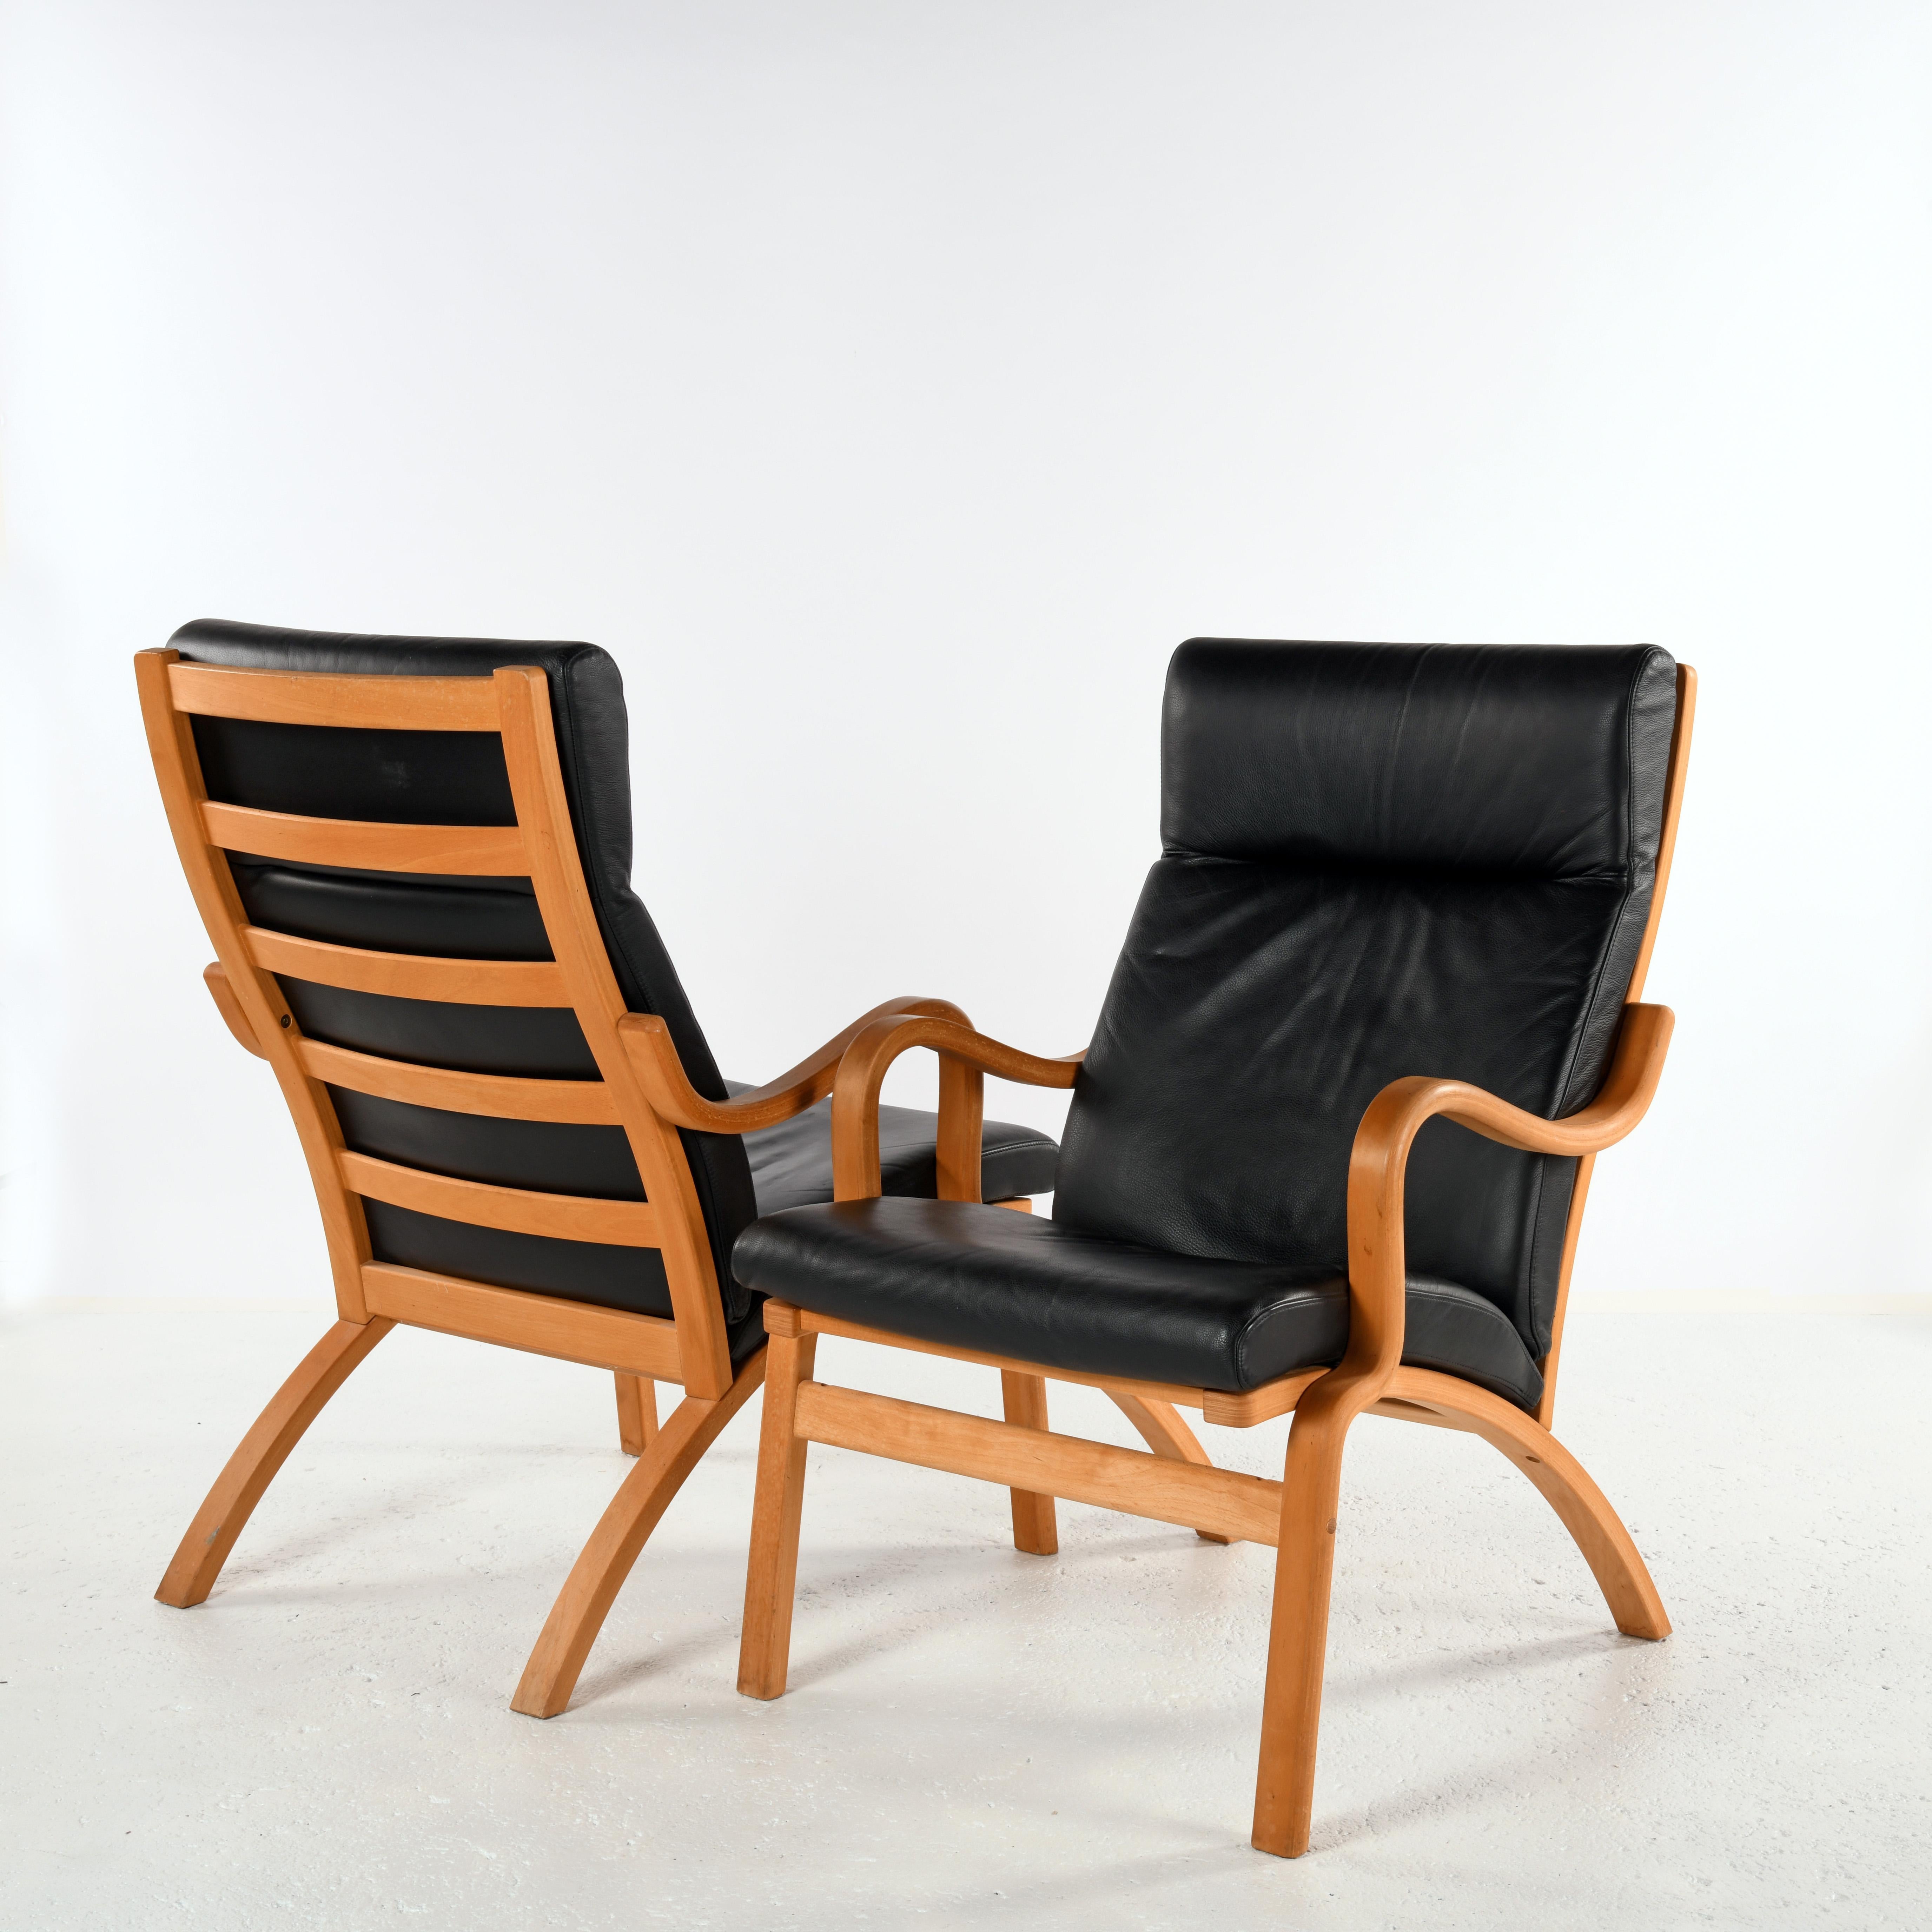 Paire de fauteuils fabriqués par Stouby au Danemark. Hêtre multiplis courbé et cuir noir, édition du début du XXe siècle en parfait état.  Légers, ils sont faciles à déplacer. Le dossier haut offre un excellent soutien au dos et à la tête.
La